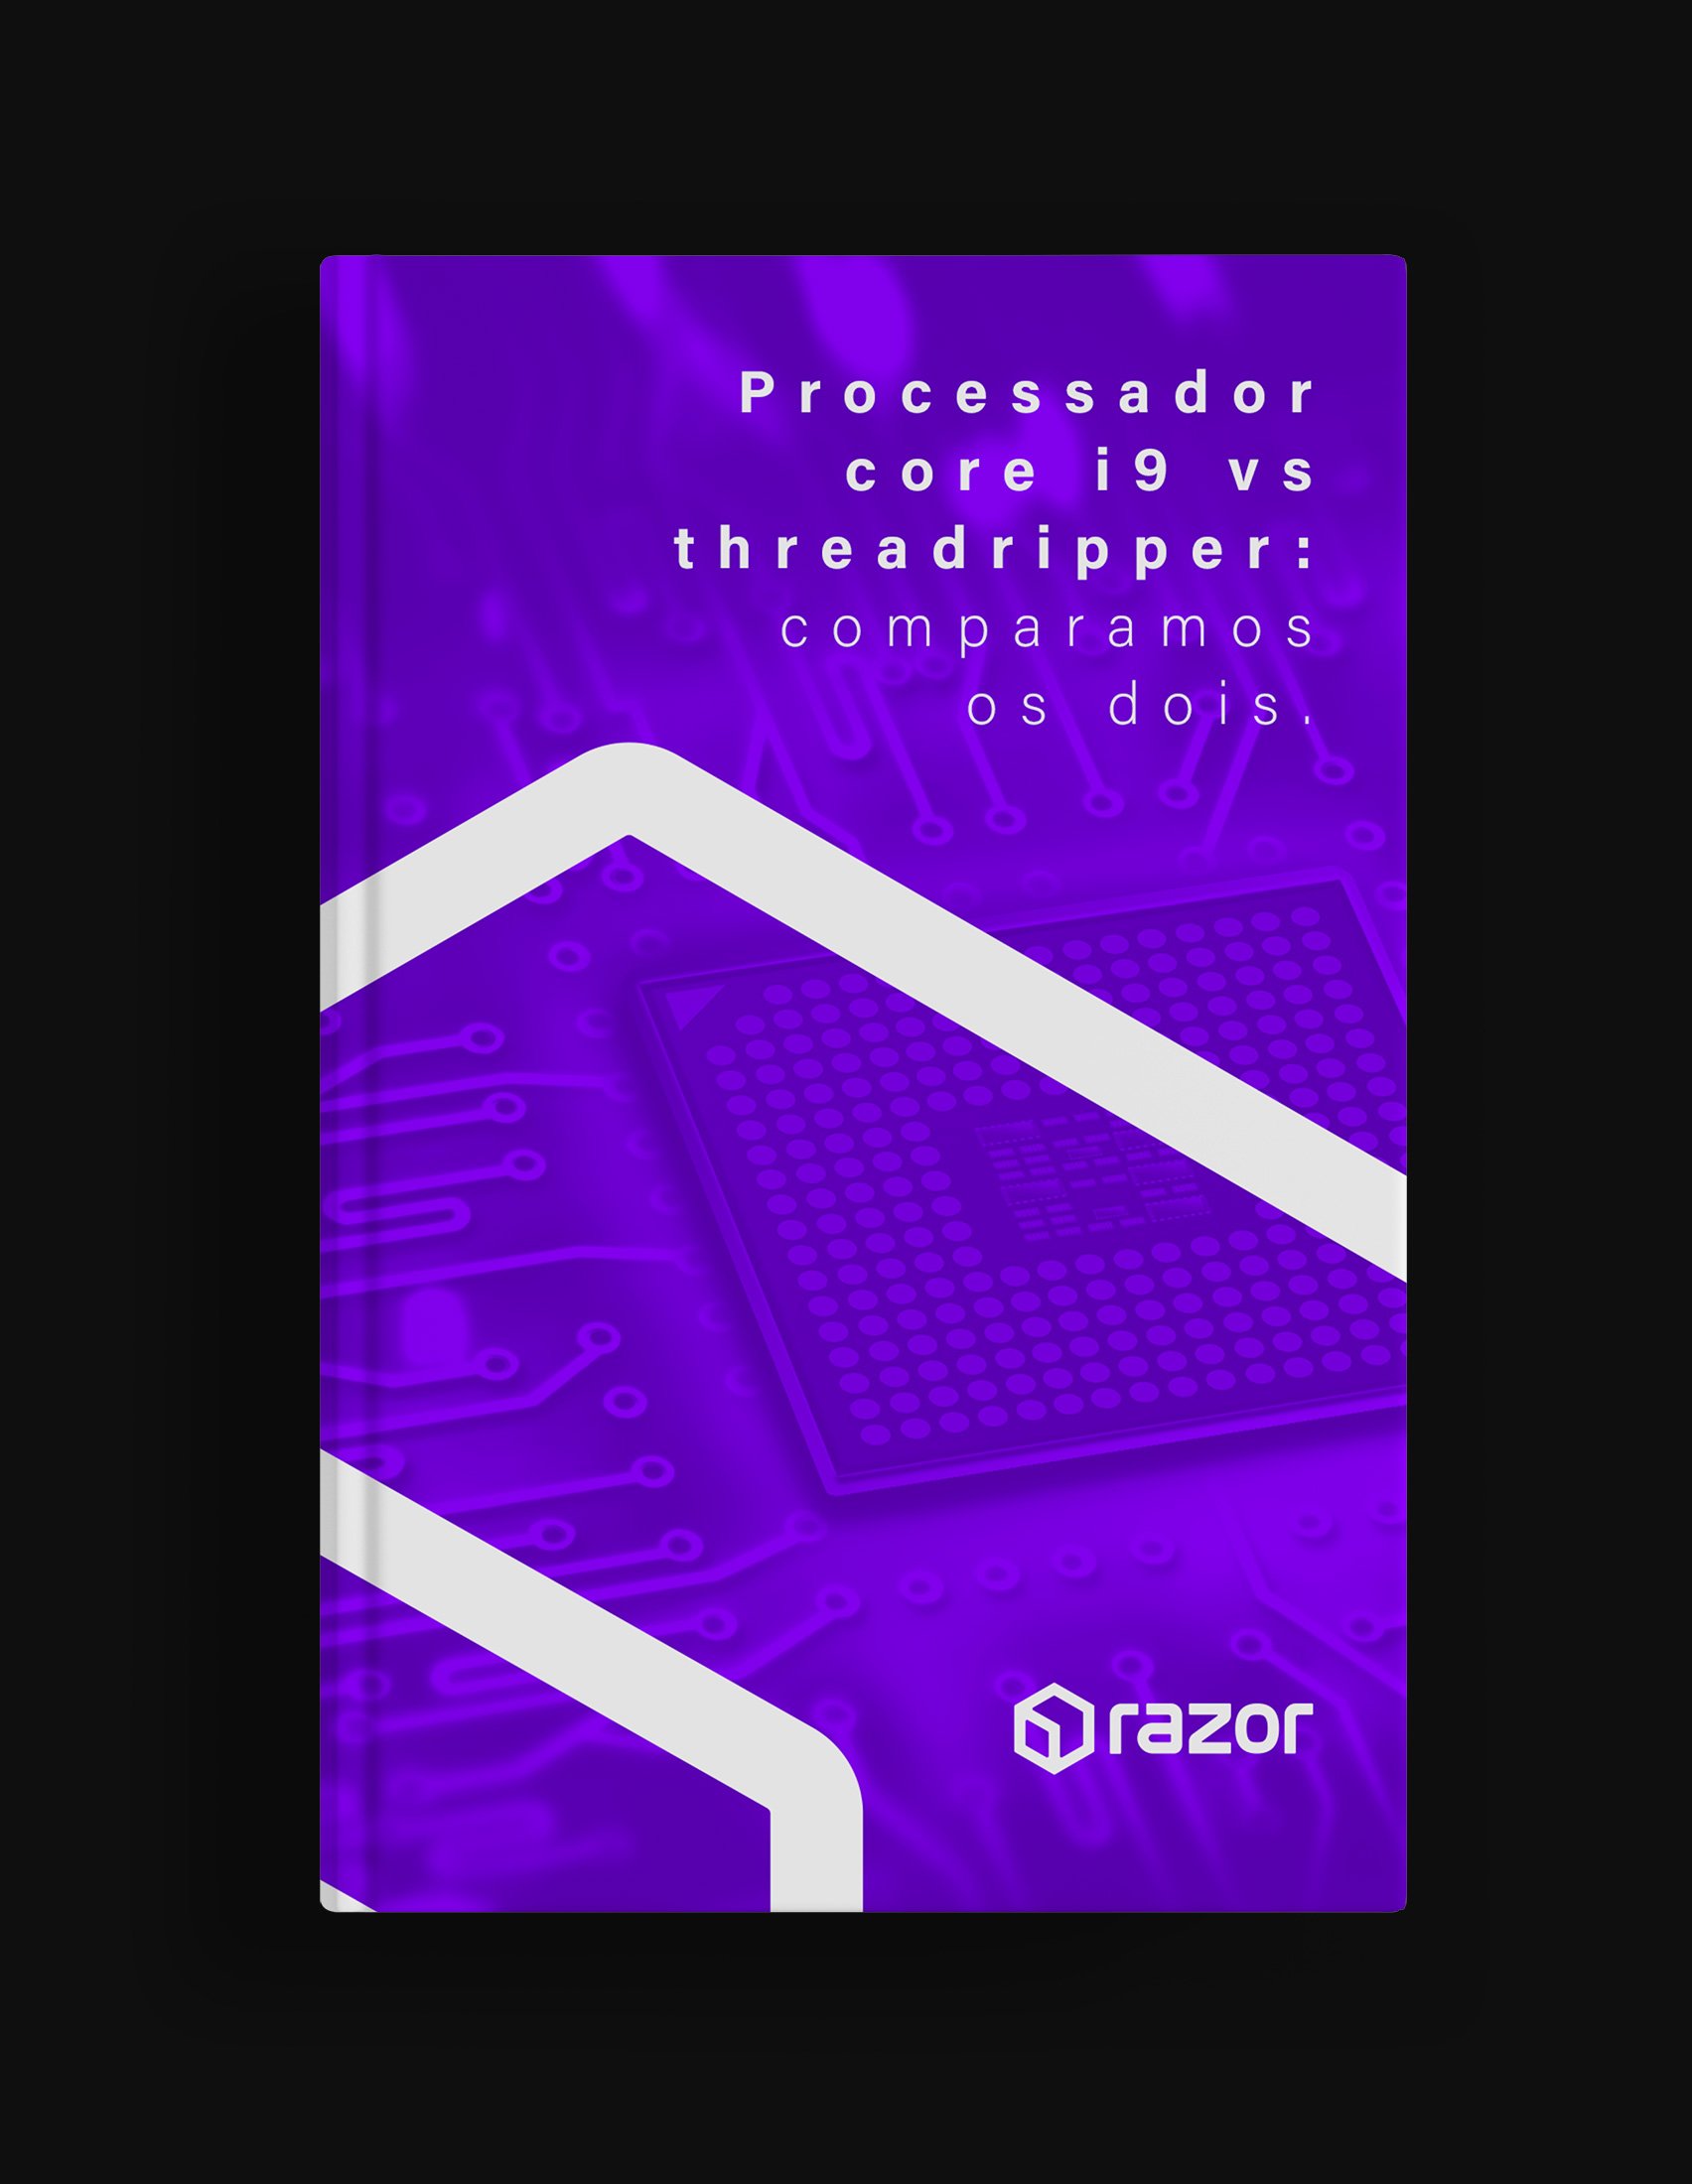 capa_e_book_processador_core_i9_vs_threadripper_comparamos_os_dois